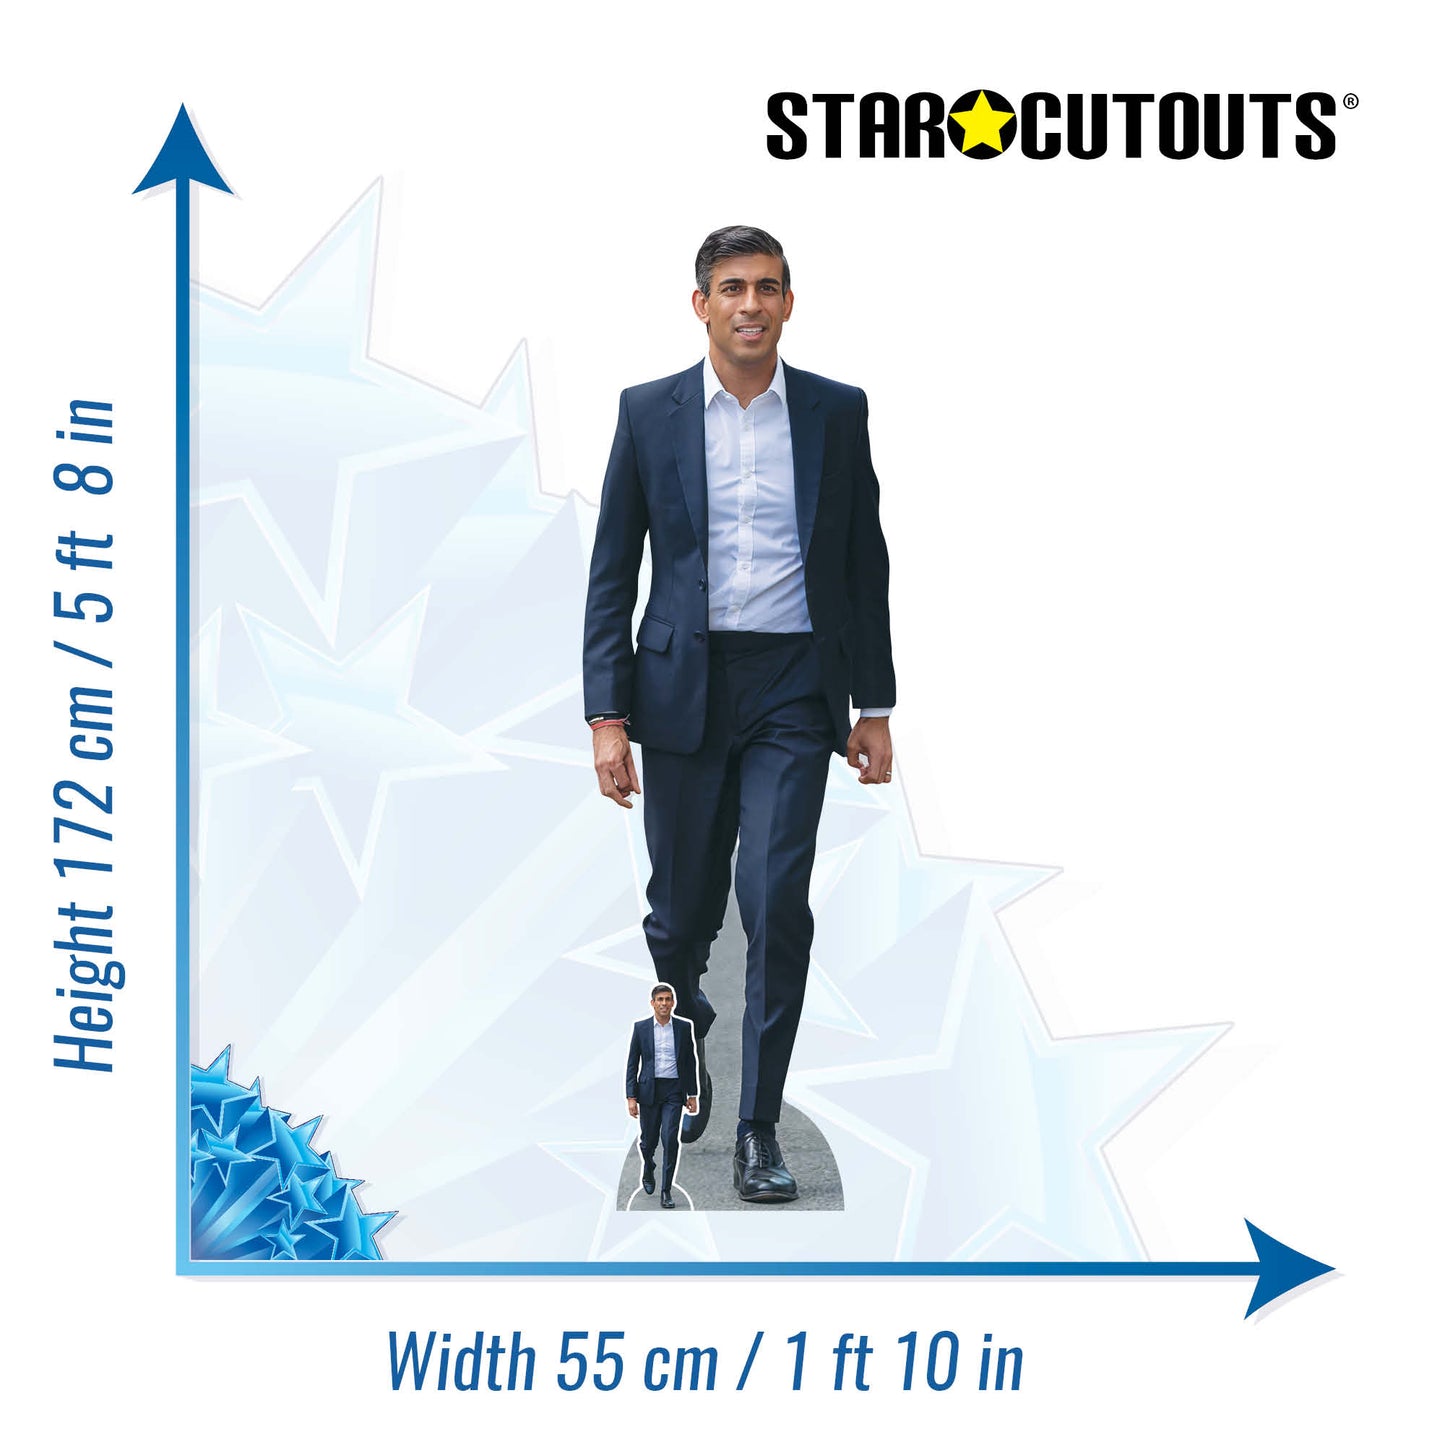 SC4186 Rishi Sunak Conservative Prime Minister Cardboard Cut Out Height 172cm